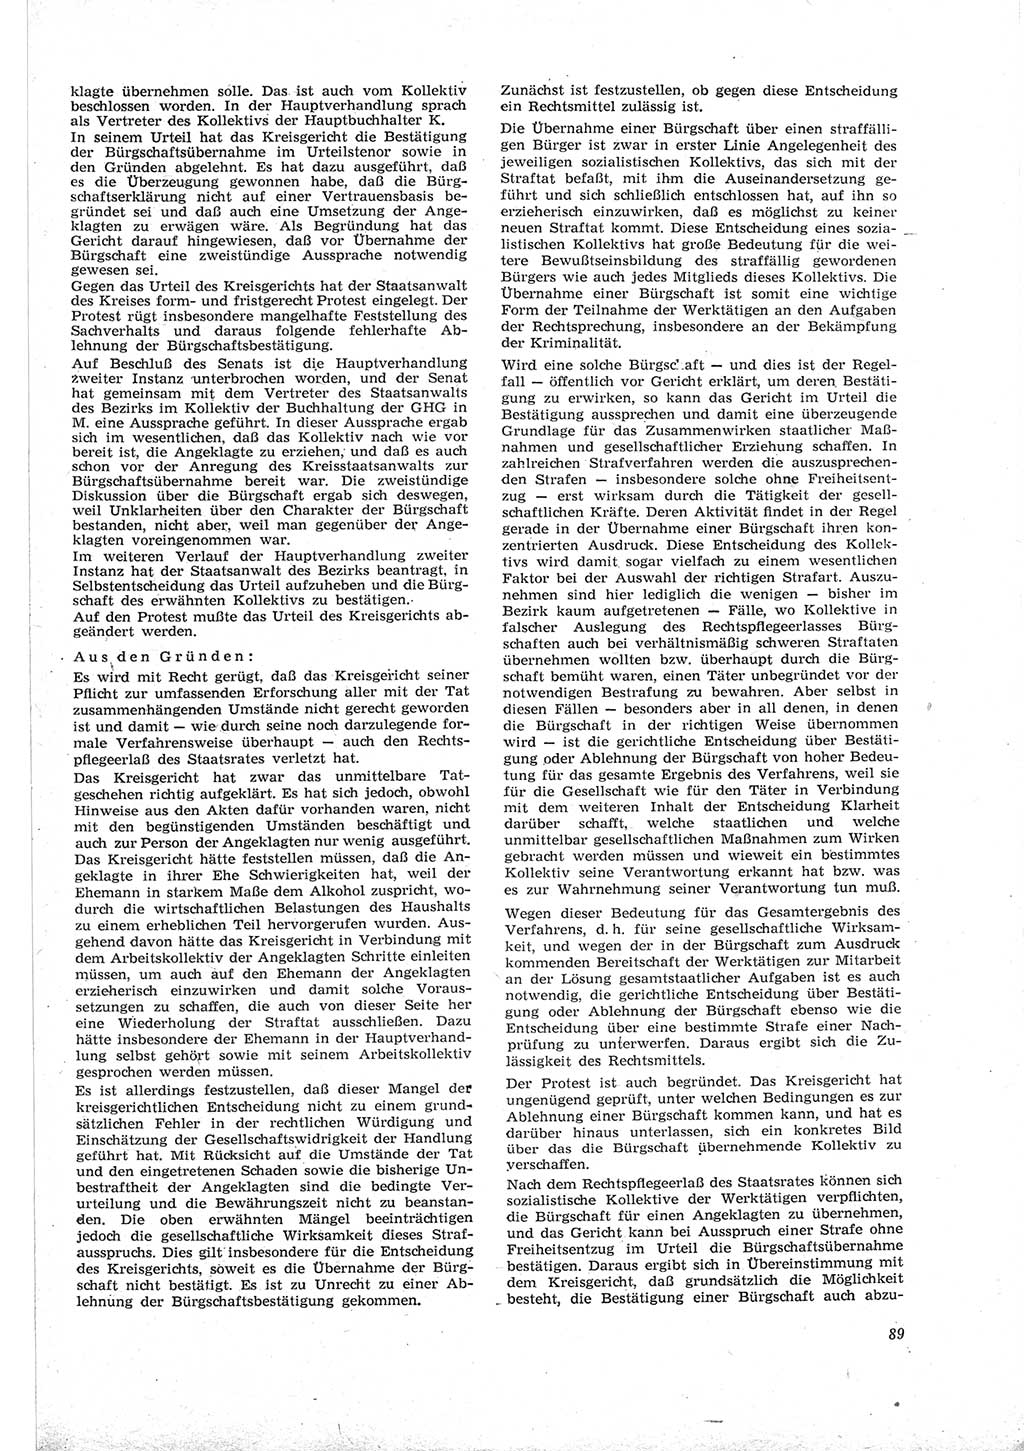 Neue Justiz (NJ), Zeitschrift für Recht und Rechtswissenschaft [Deutsche Demokratische Republik (DDR)], 18. Jahrgang 1964, Seite 89 (NJ DDR 1964, S. 89)